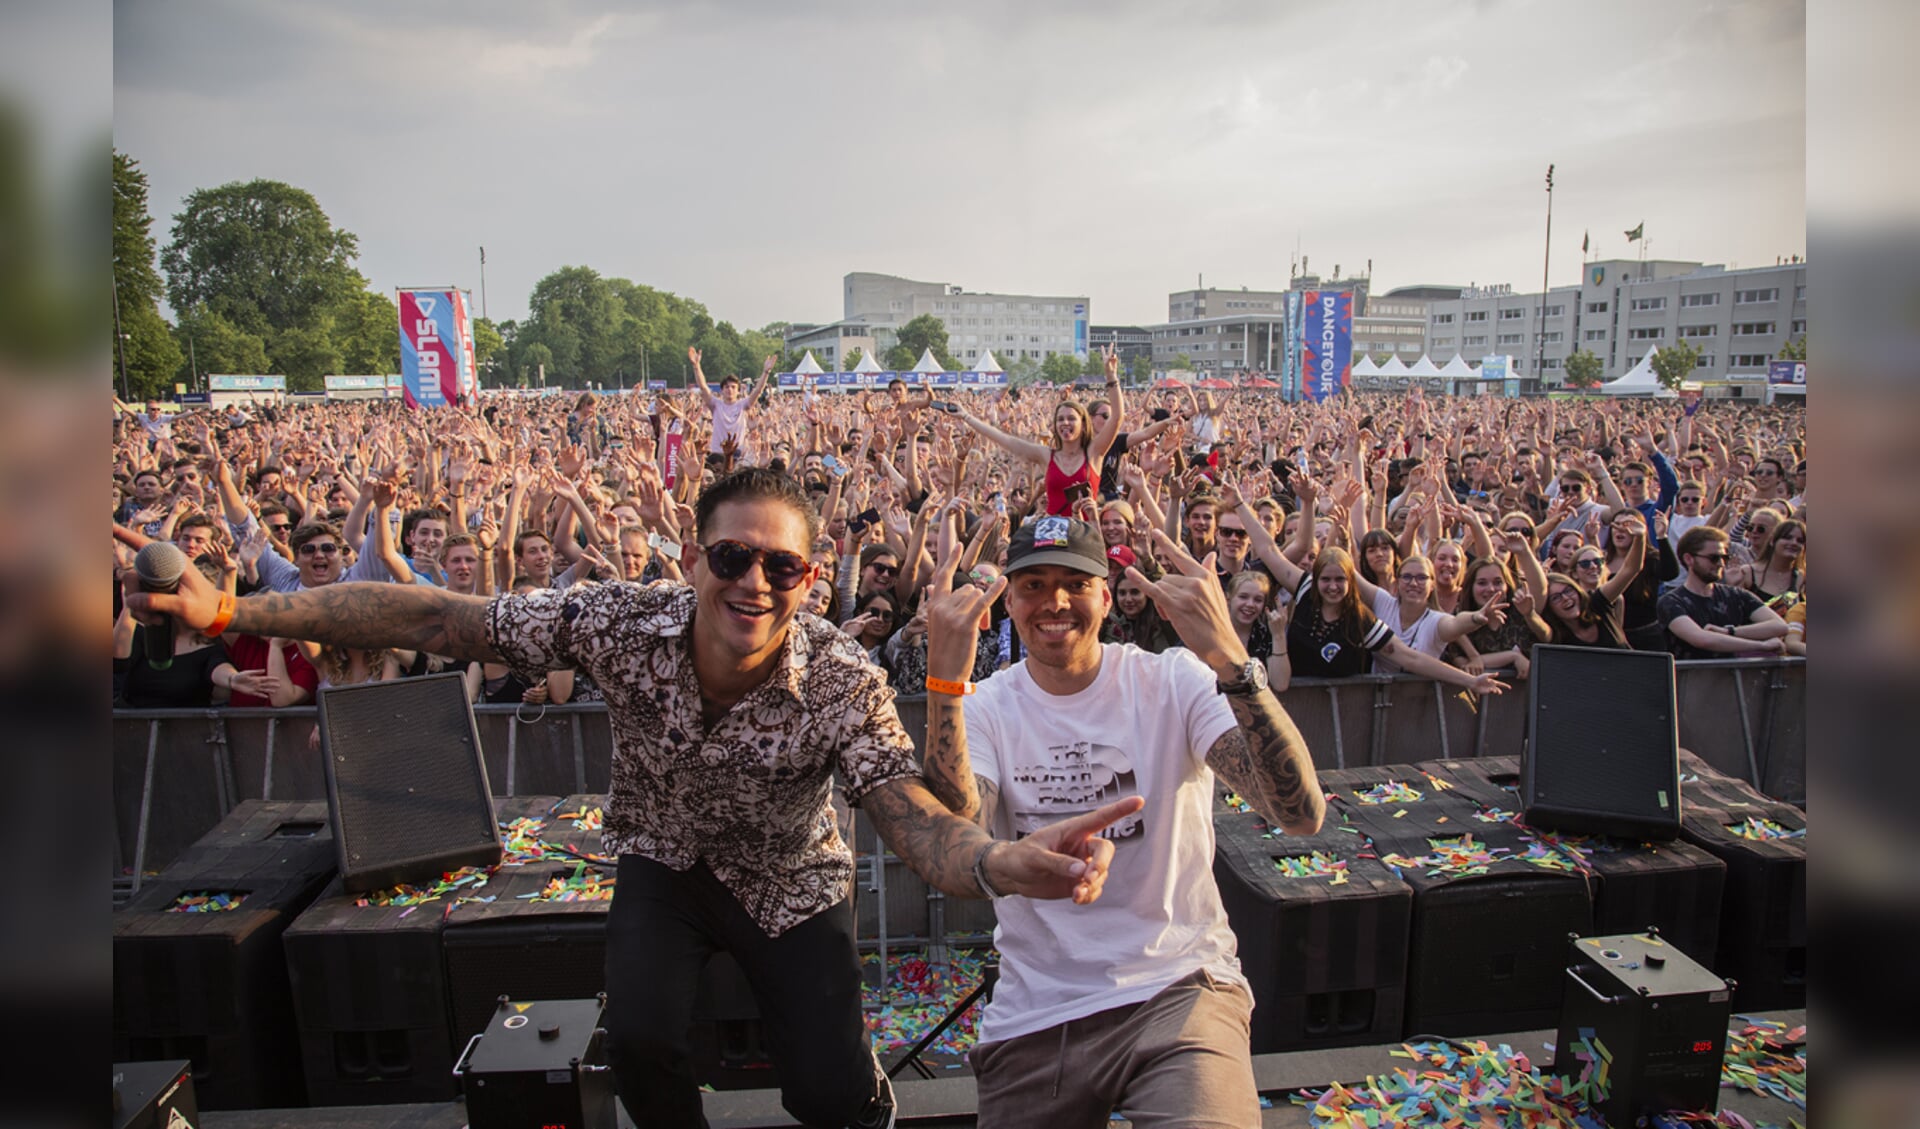 Dancetour Breda 2018, met meer dan 20.000 bezoekers was het volle bak.